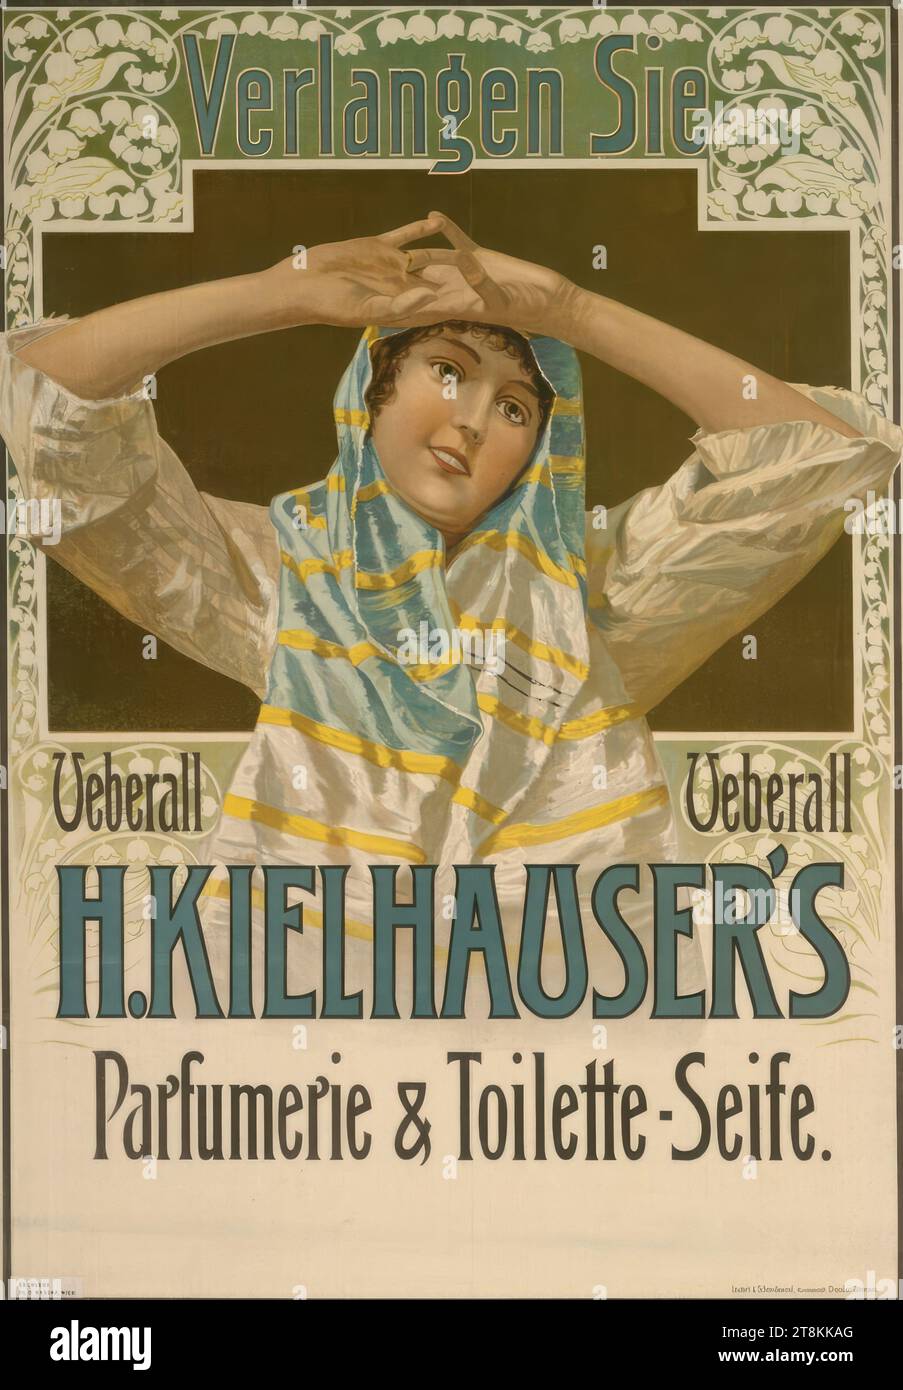 H. KIELHAUSER'S profumeria & sapone per WC, anonimo, intorno al 1900, stampa, litografia a colori, foglio: 785 mm x 550 mm Foto Stock